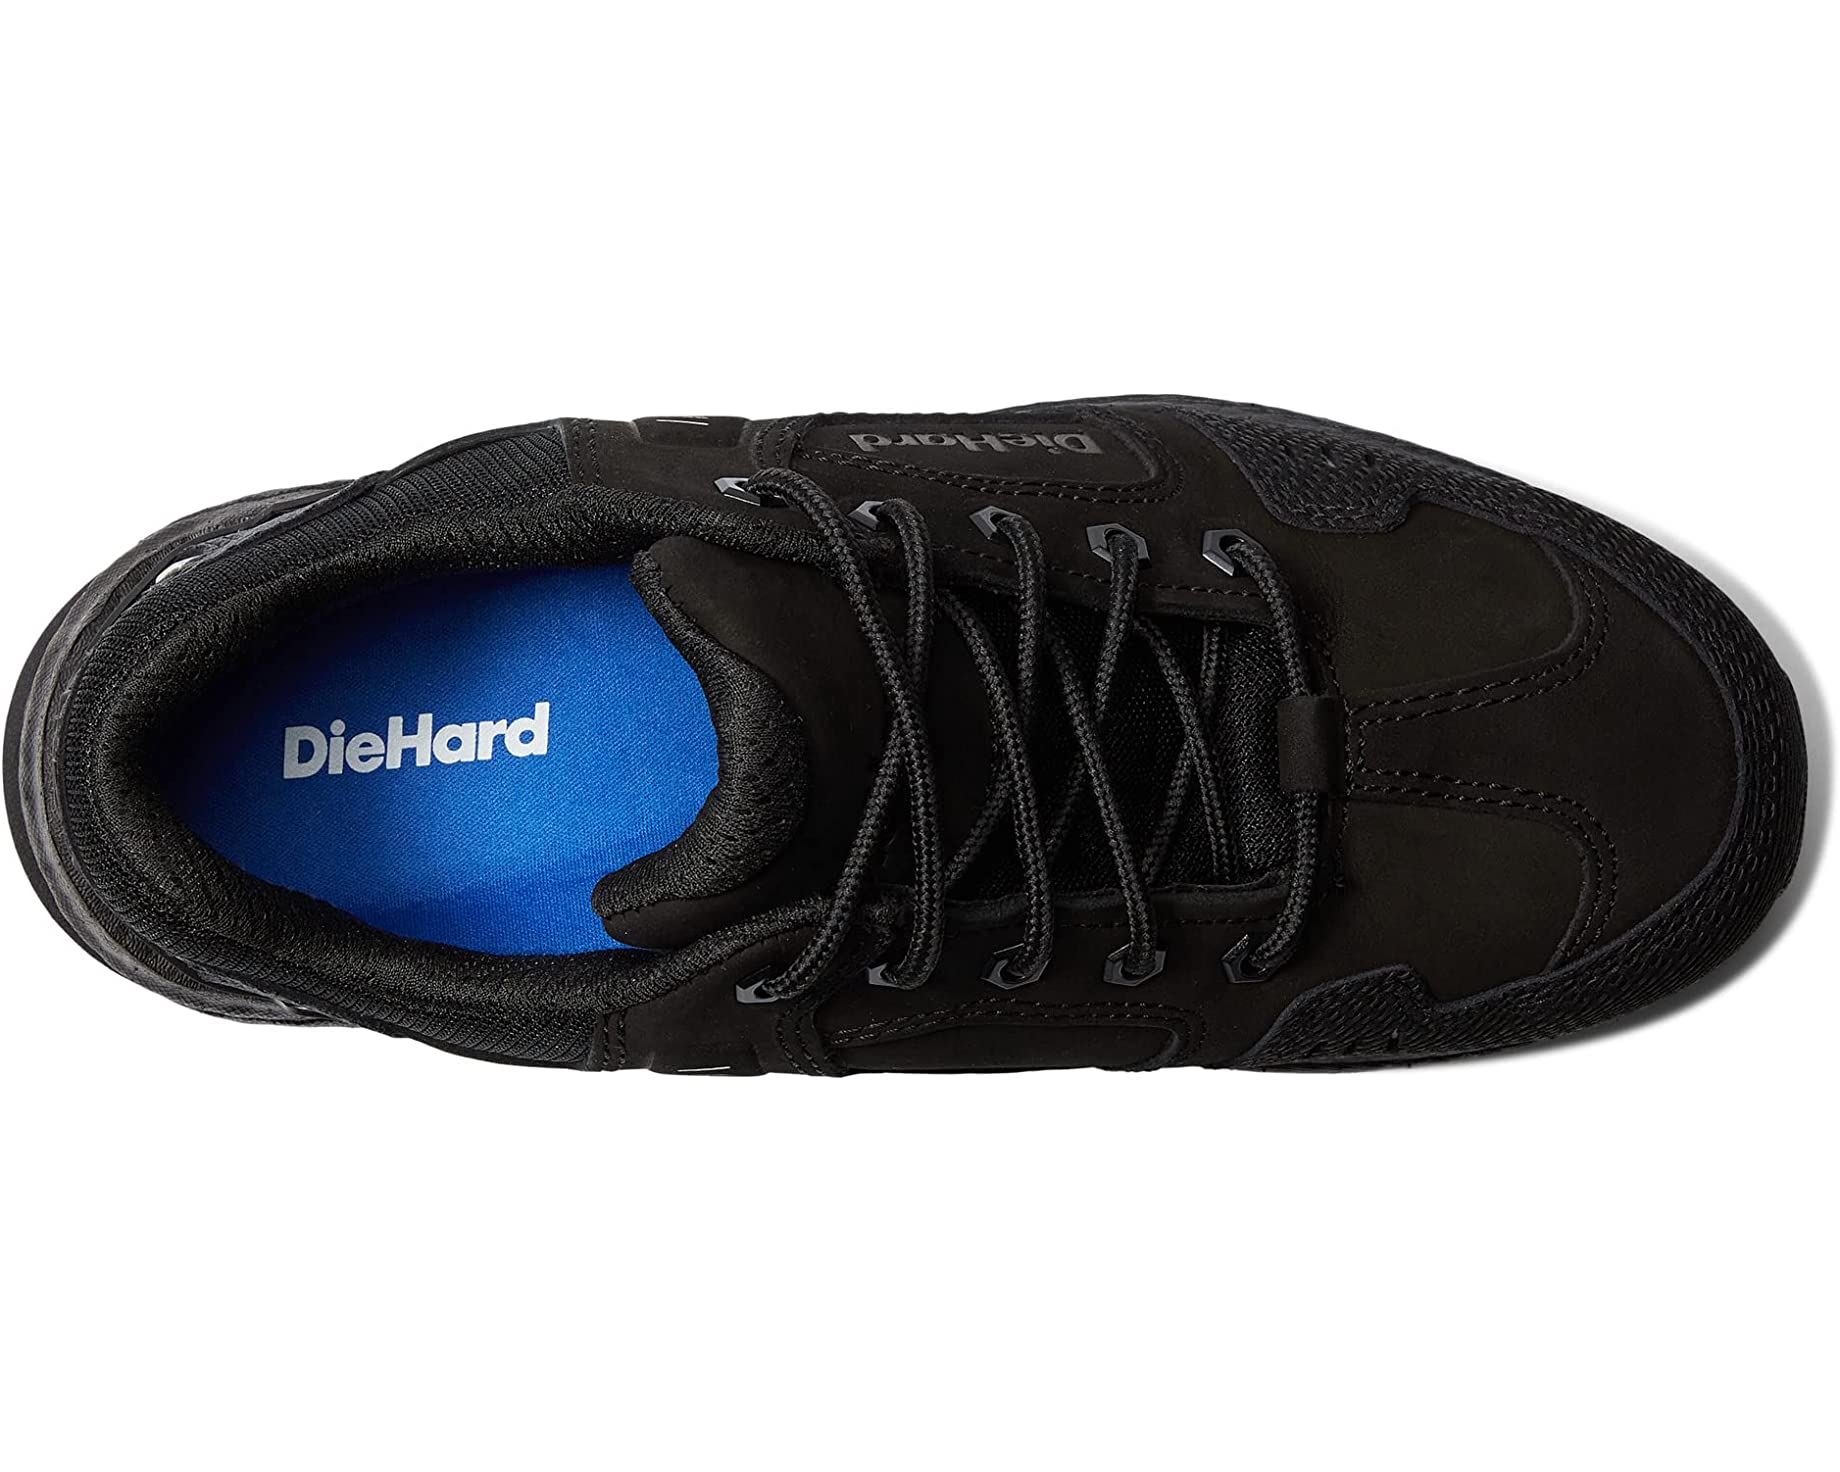 Кроссовки Torrent Soft Toe Athletic DieHard, черный спортивная обувь унисекс с широким носком черный